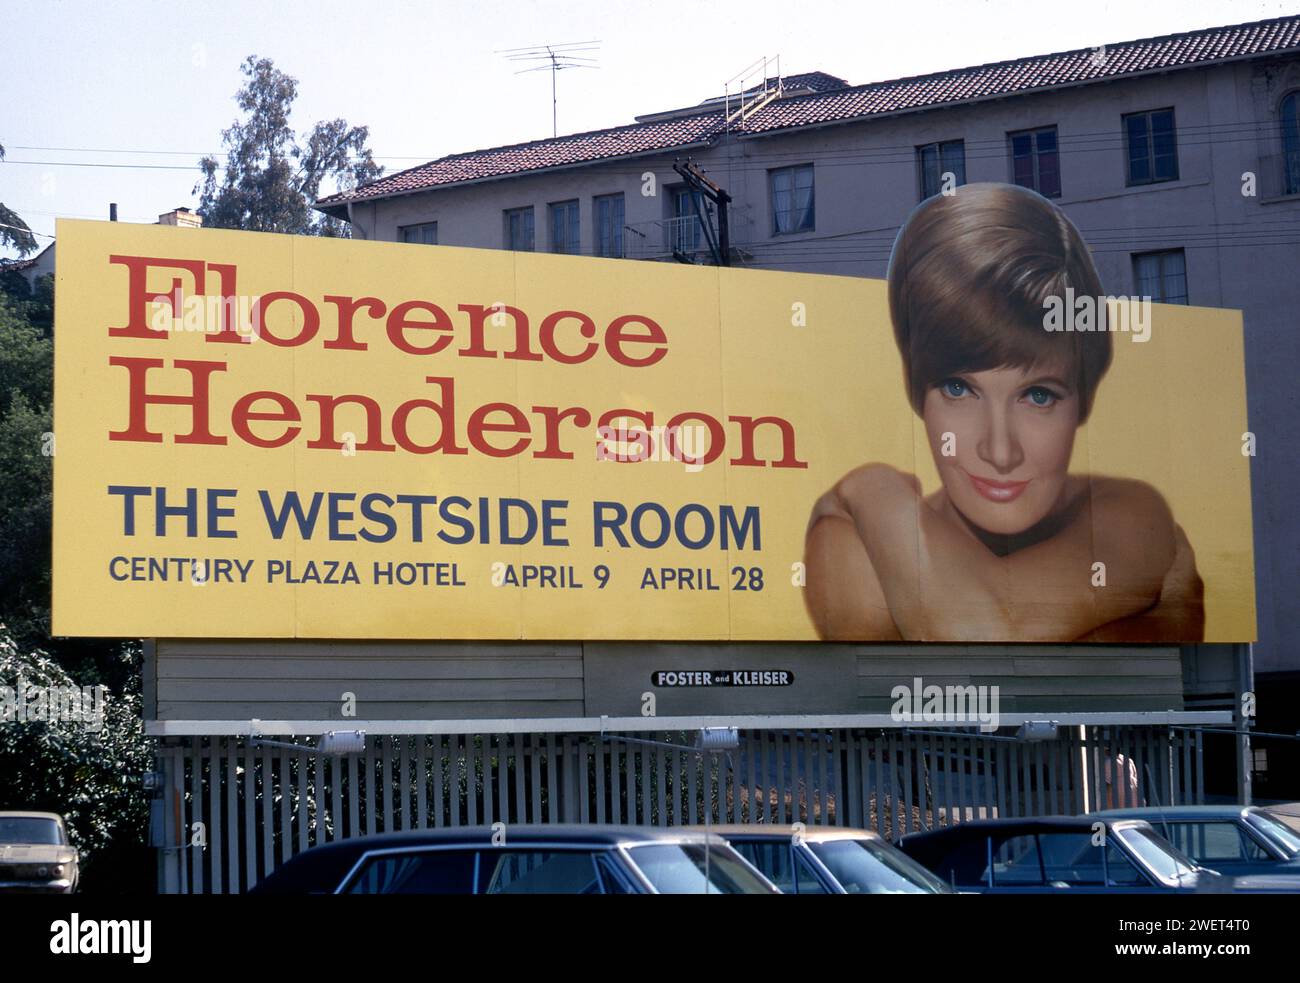 Un cartellone sulla Sunset Strip promuove una performance dal vivo di Florence Henderson, in seguito conosciuta per il suo ruolo nello show televisivo Brady Bunch. circa 1970. Los Angeles, California, USA Foto Stock